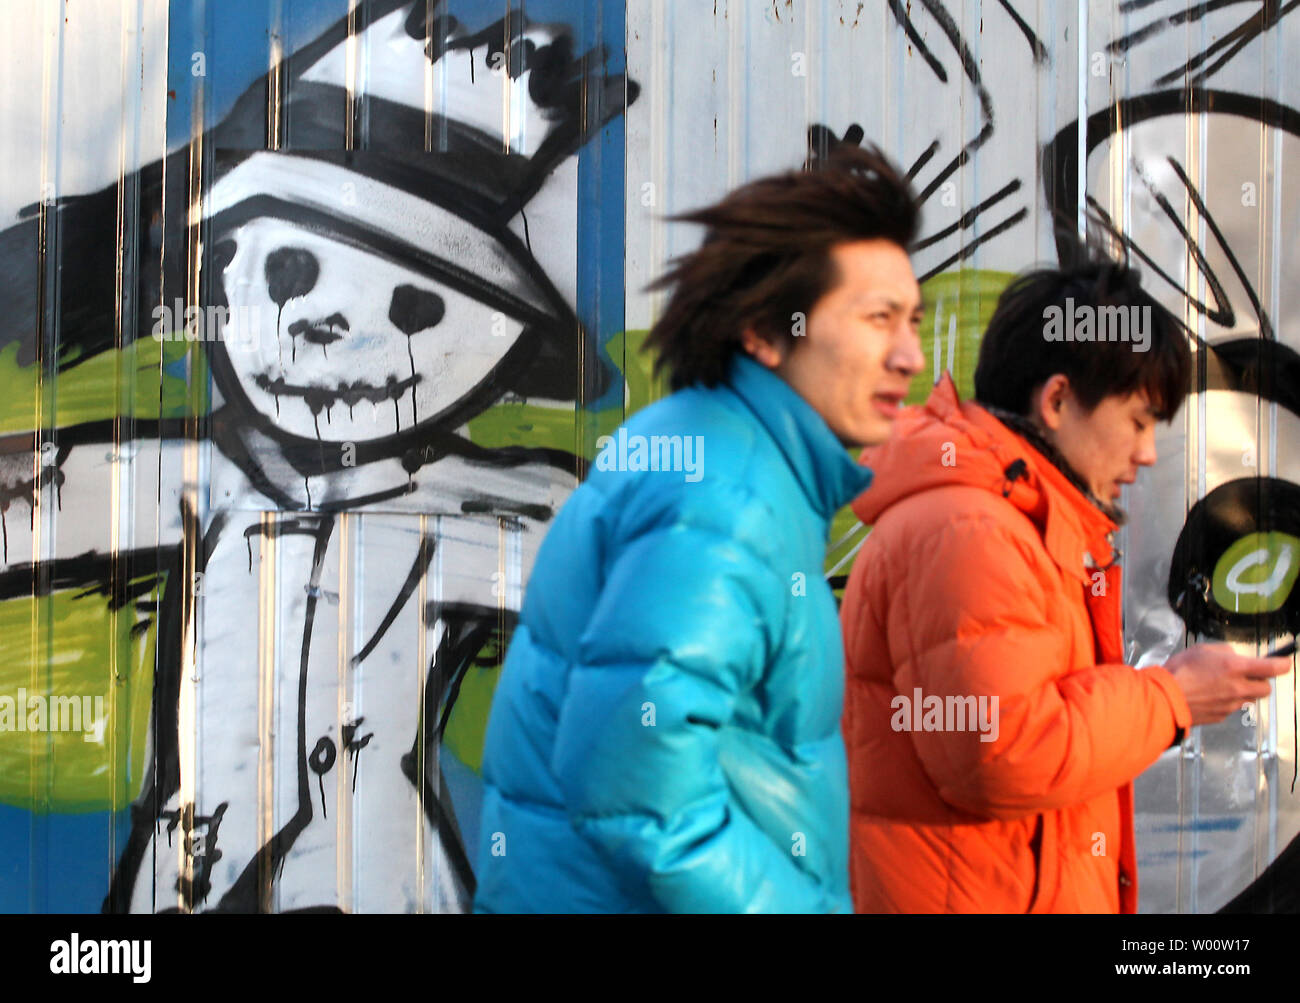 Chinesische Männer vorbei Street Graffiti, eine Vogelscheuche in Peking am 16. Januar 2011. Beide banden und Graffiti Künstler sind ein neues Problem für die Polizei in der Hauptstadt und die Bewohner der Stadt zu stellen, zunehmend "Verwestlicht". UPI/Stephen Rasierer Stockfoto